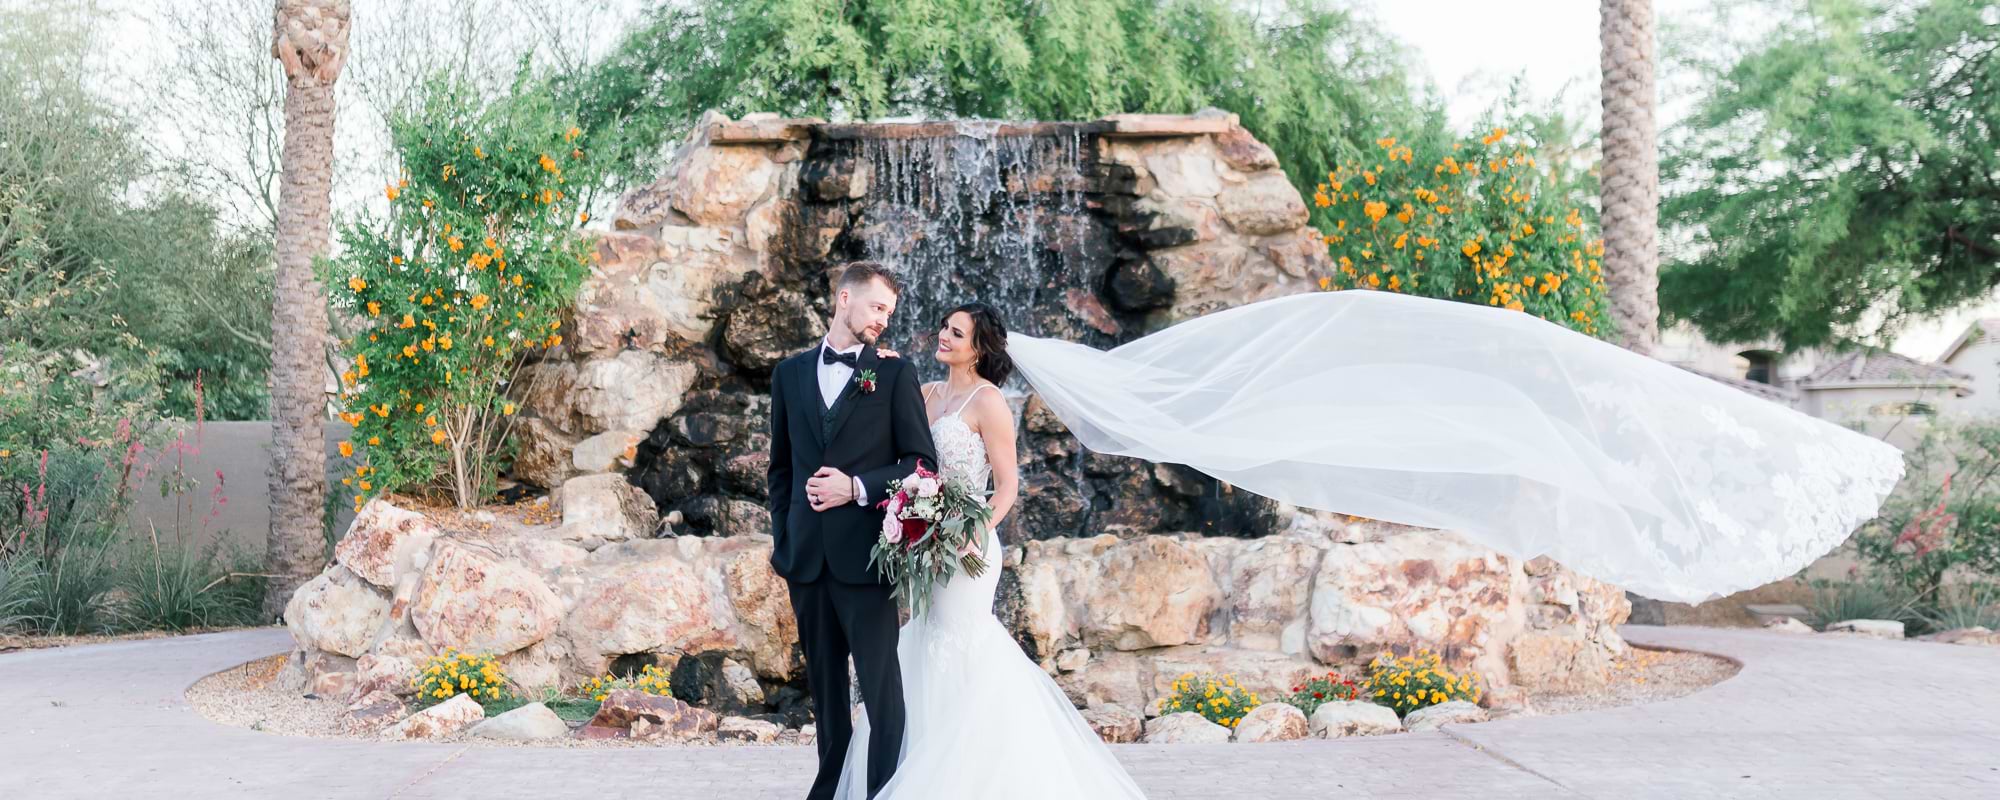 Arizona Destination Wedding Idea: Colby Falls by Wedgewood Weddings